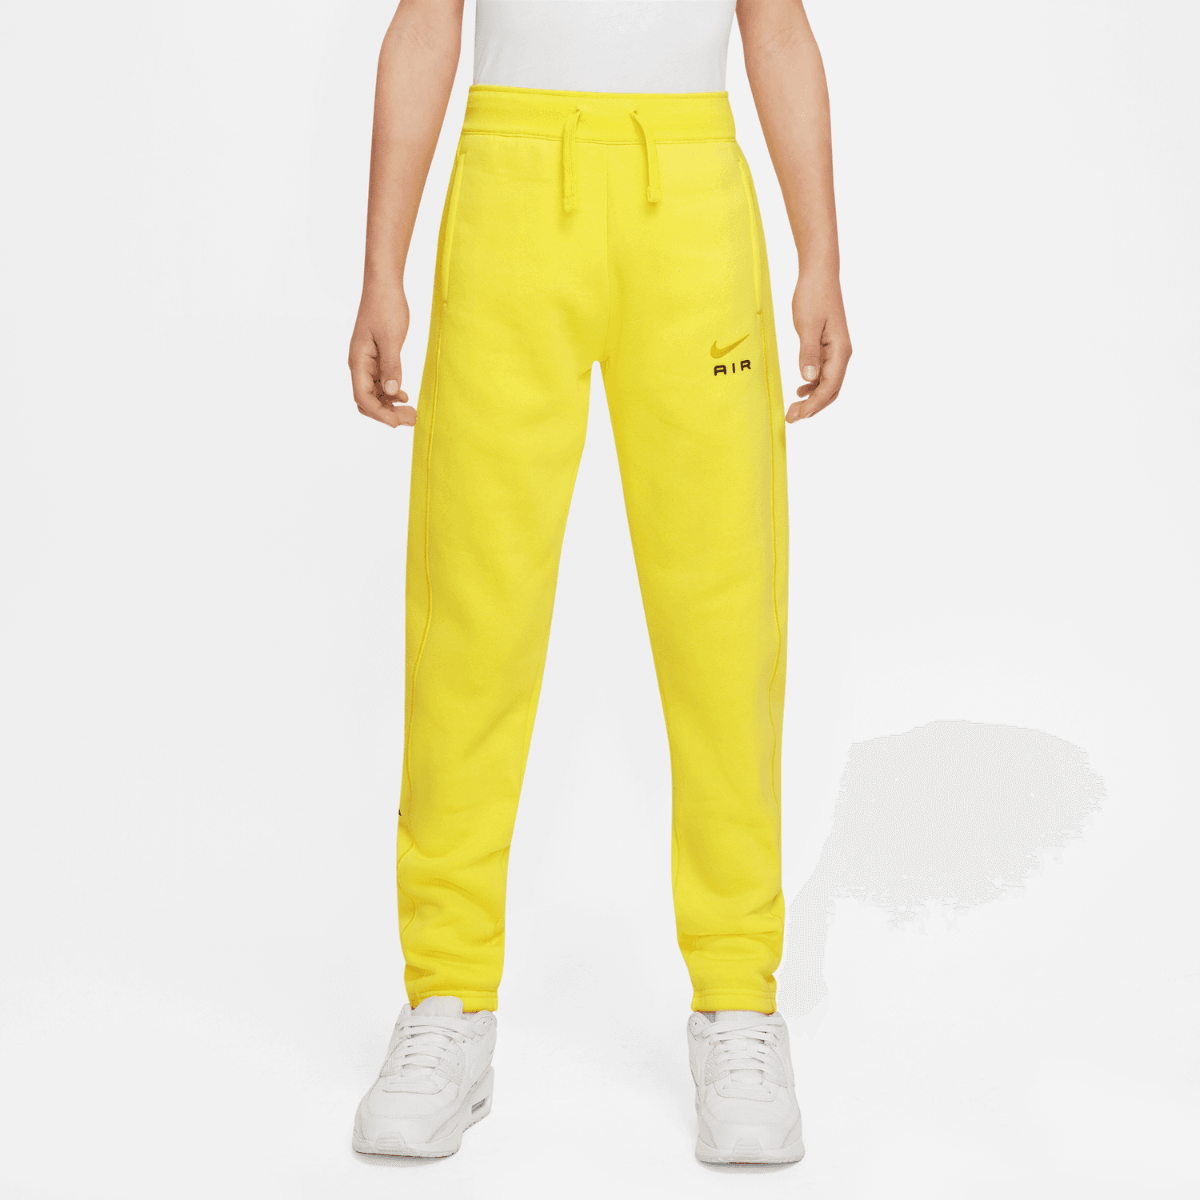 Nike Air Pants Junior - Yellow/Black